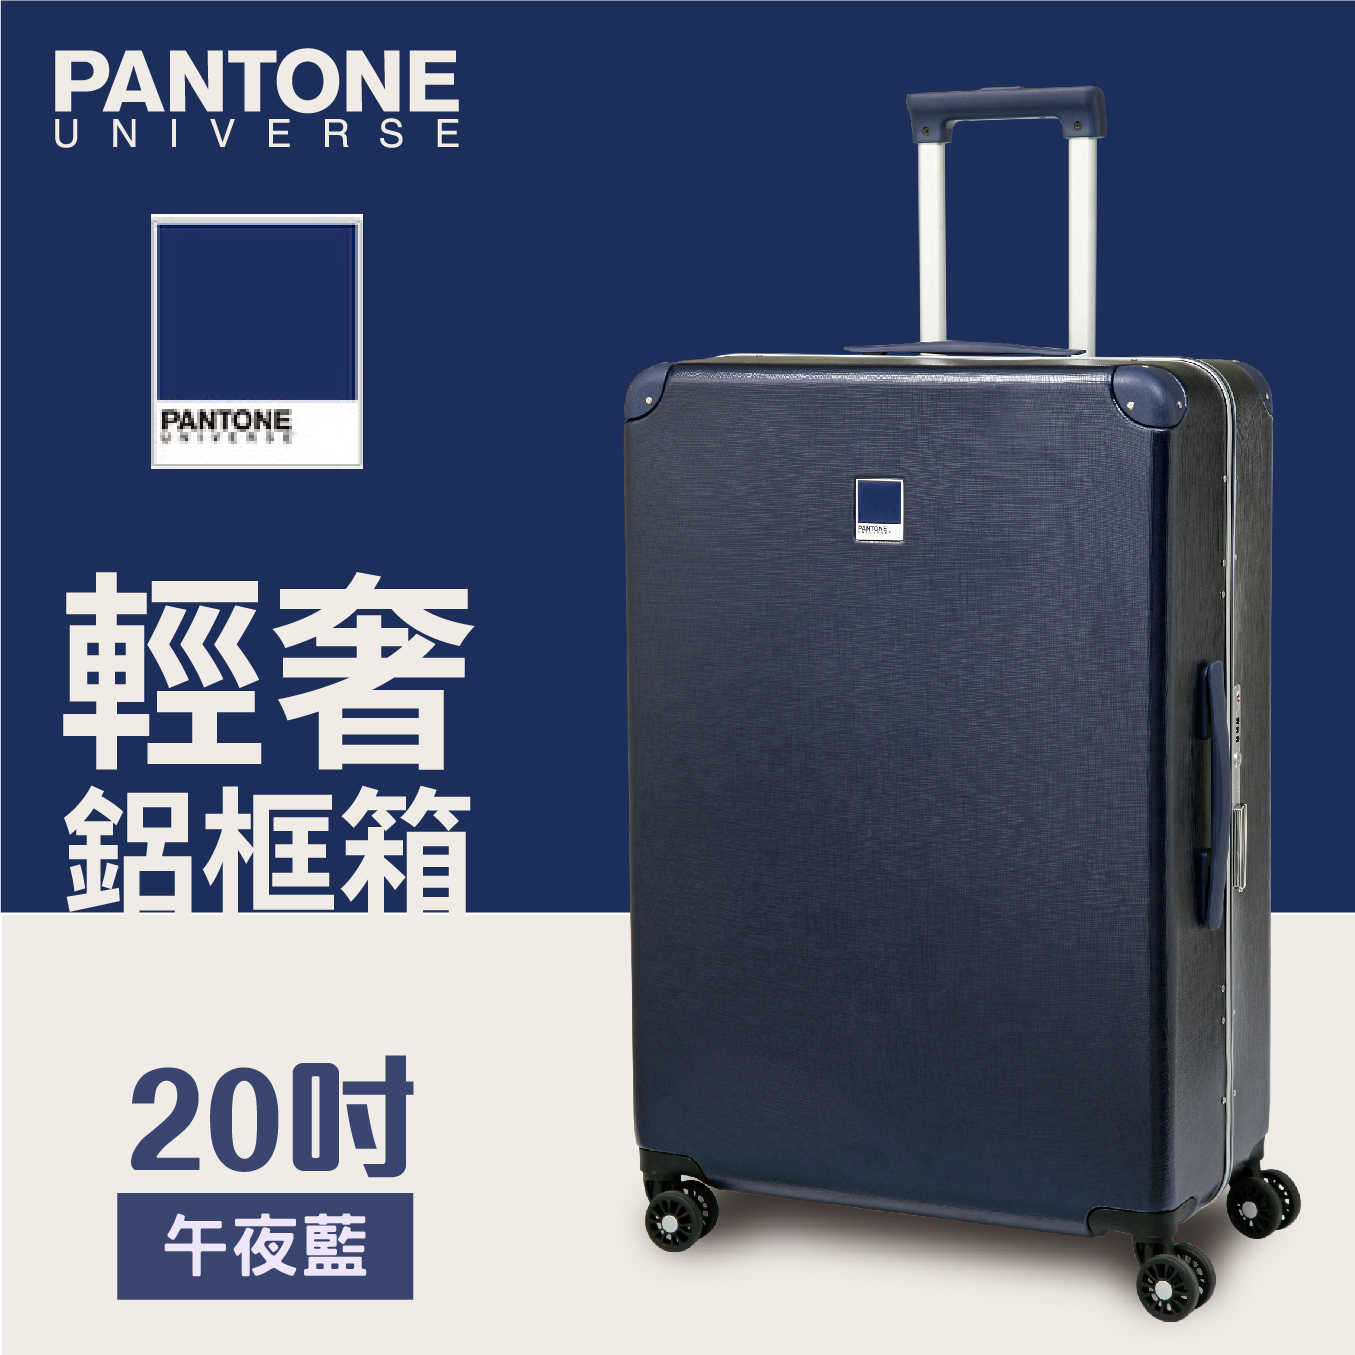 PANTONE 輕奢鋁框行李箱  (藍/紅) 20吋 獨家聯名款 台灣限定旅行箱 登機箱